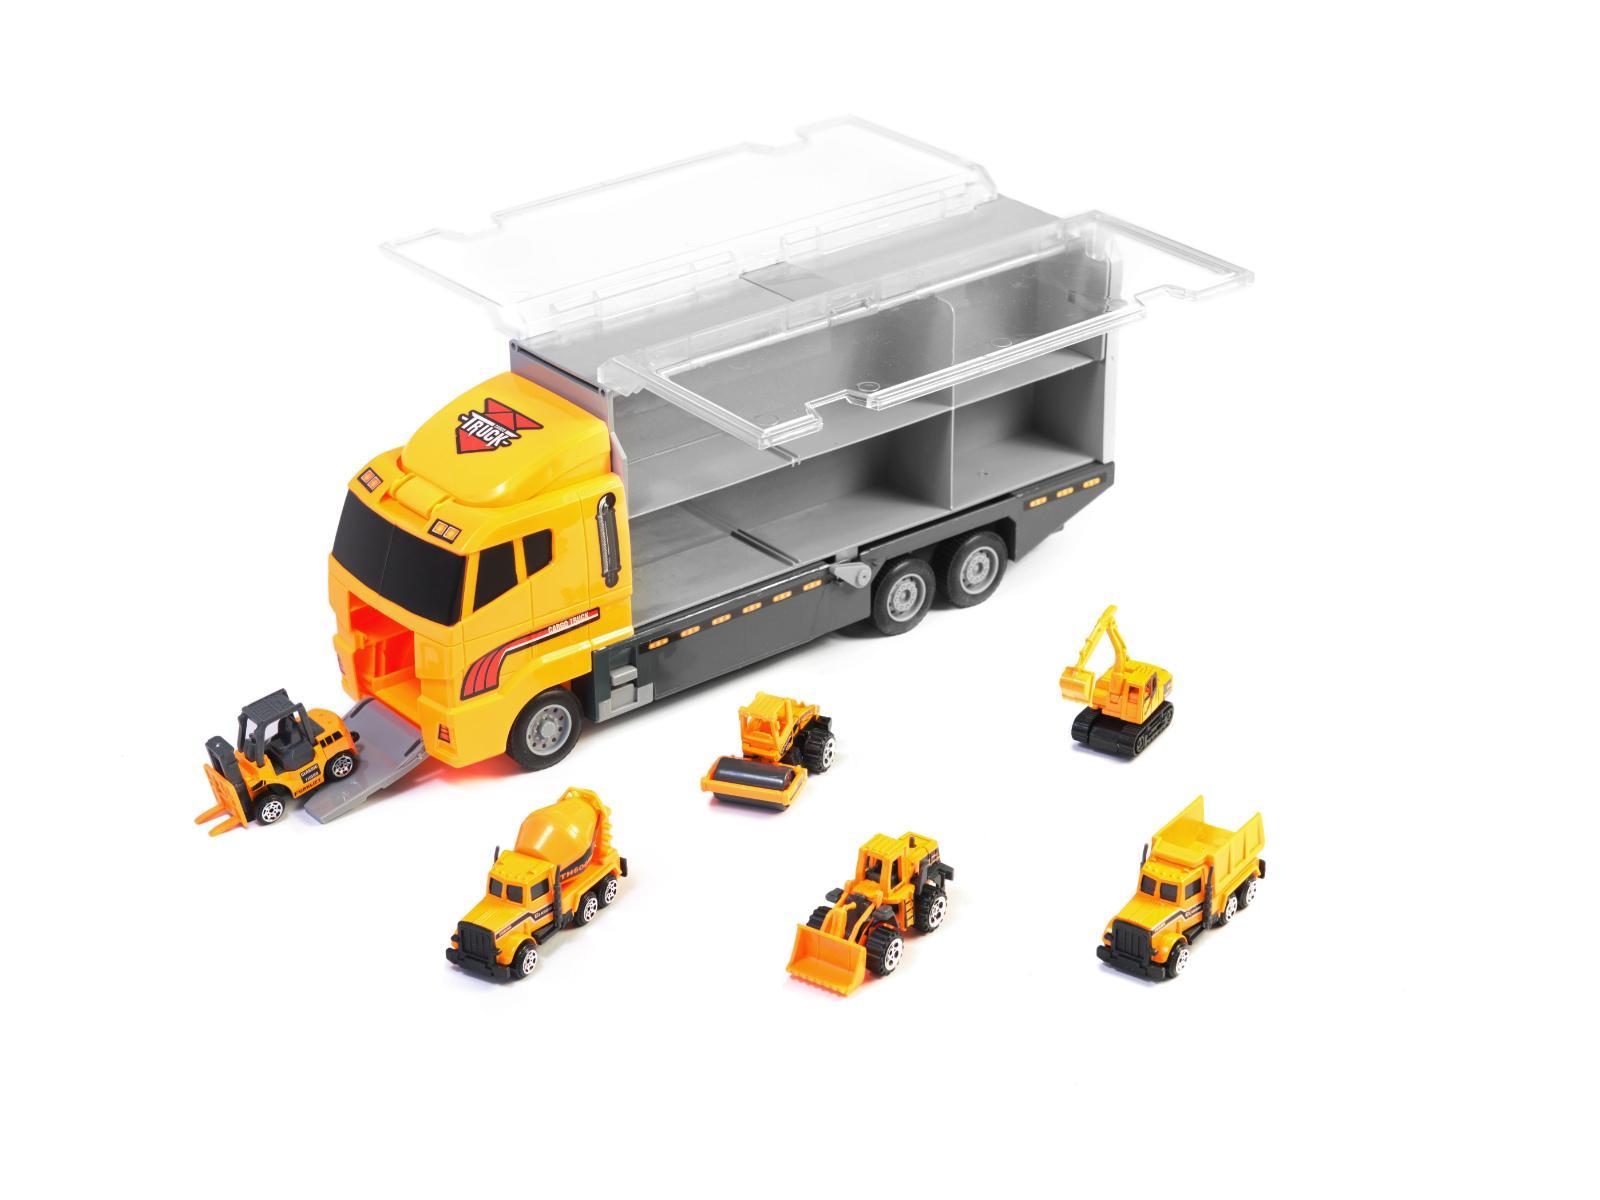 Transporter ciężarówka TIR wyrzutnia + metalowe auta maszyny budowlane zabawka dla dzieci 15x10x36cm nr. 8